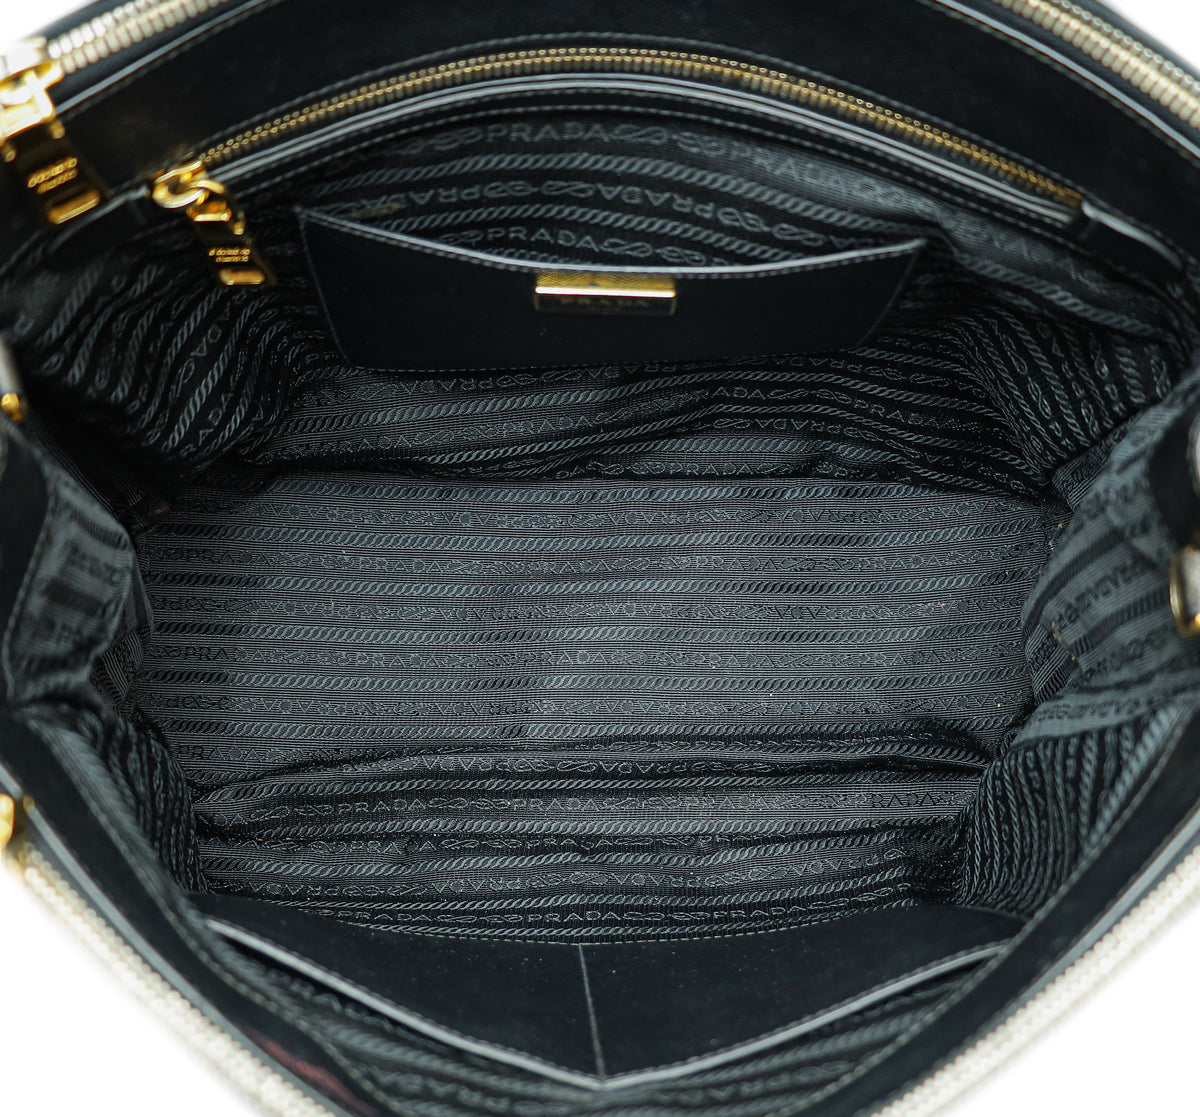 Prada Black Galleria Large Tote Bag